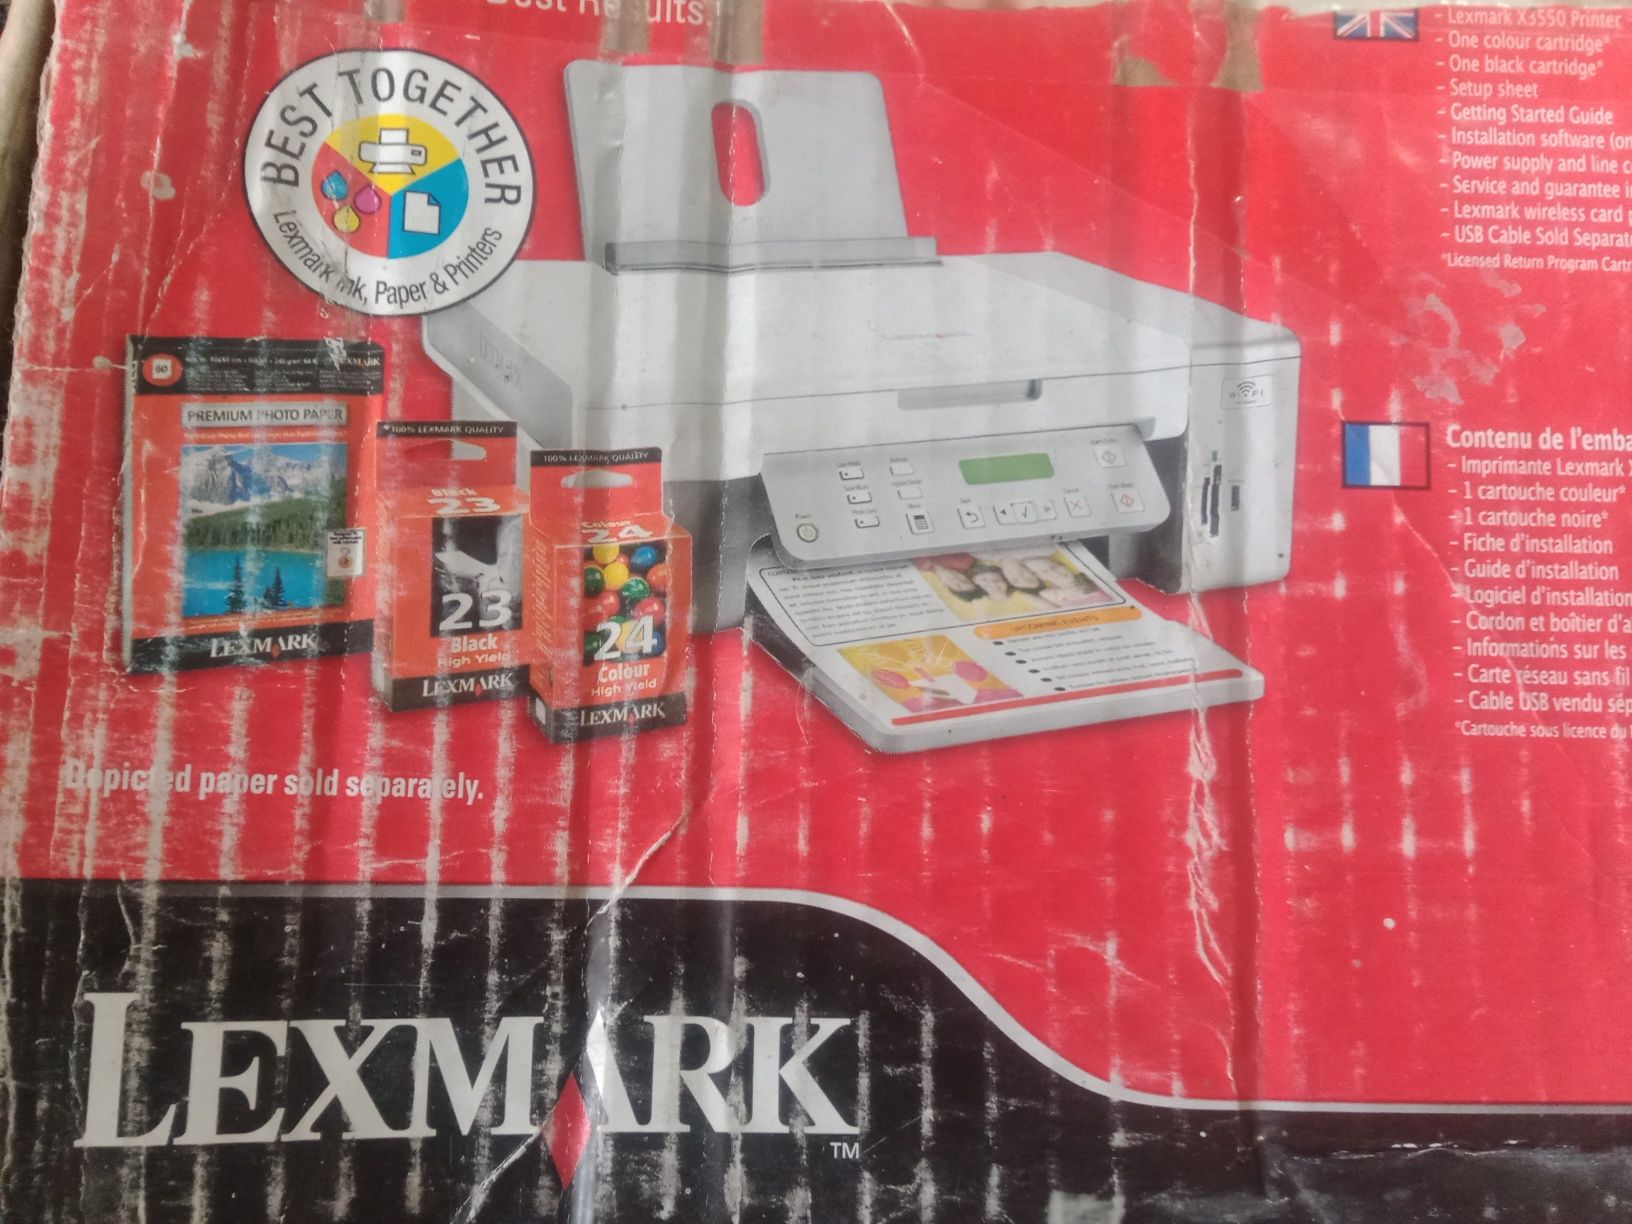 Продам новый принтер,ксерокс Lekxmark